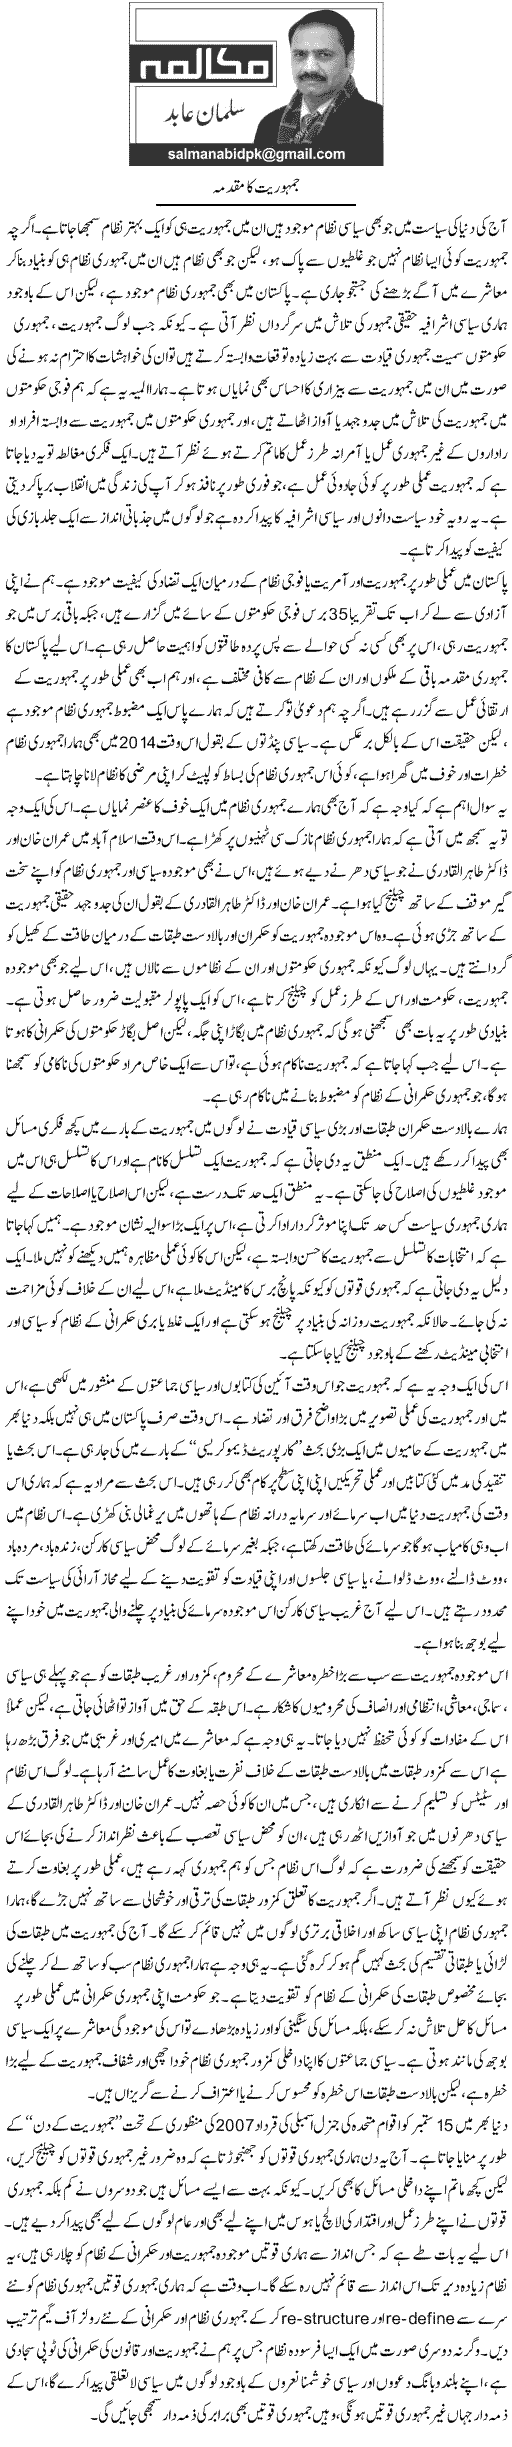 Minhaj-ul-Quran  Print Media Coverage Daily Express - Salman Abid